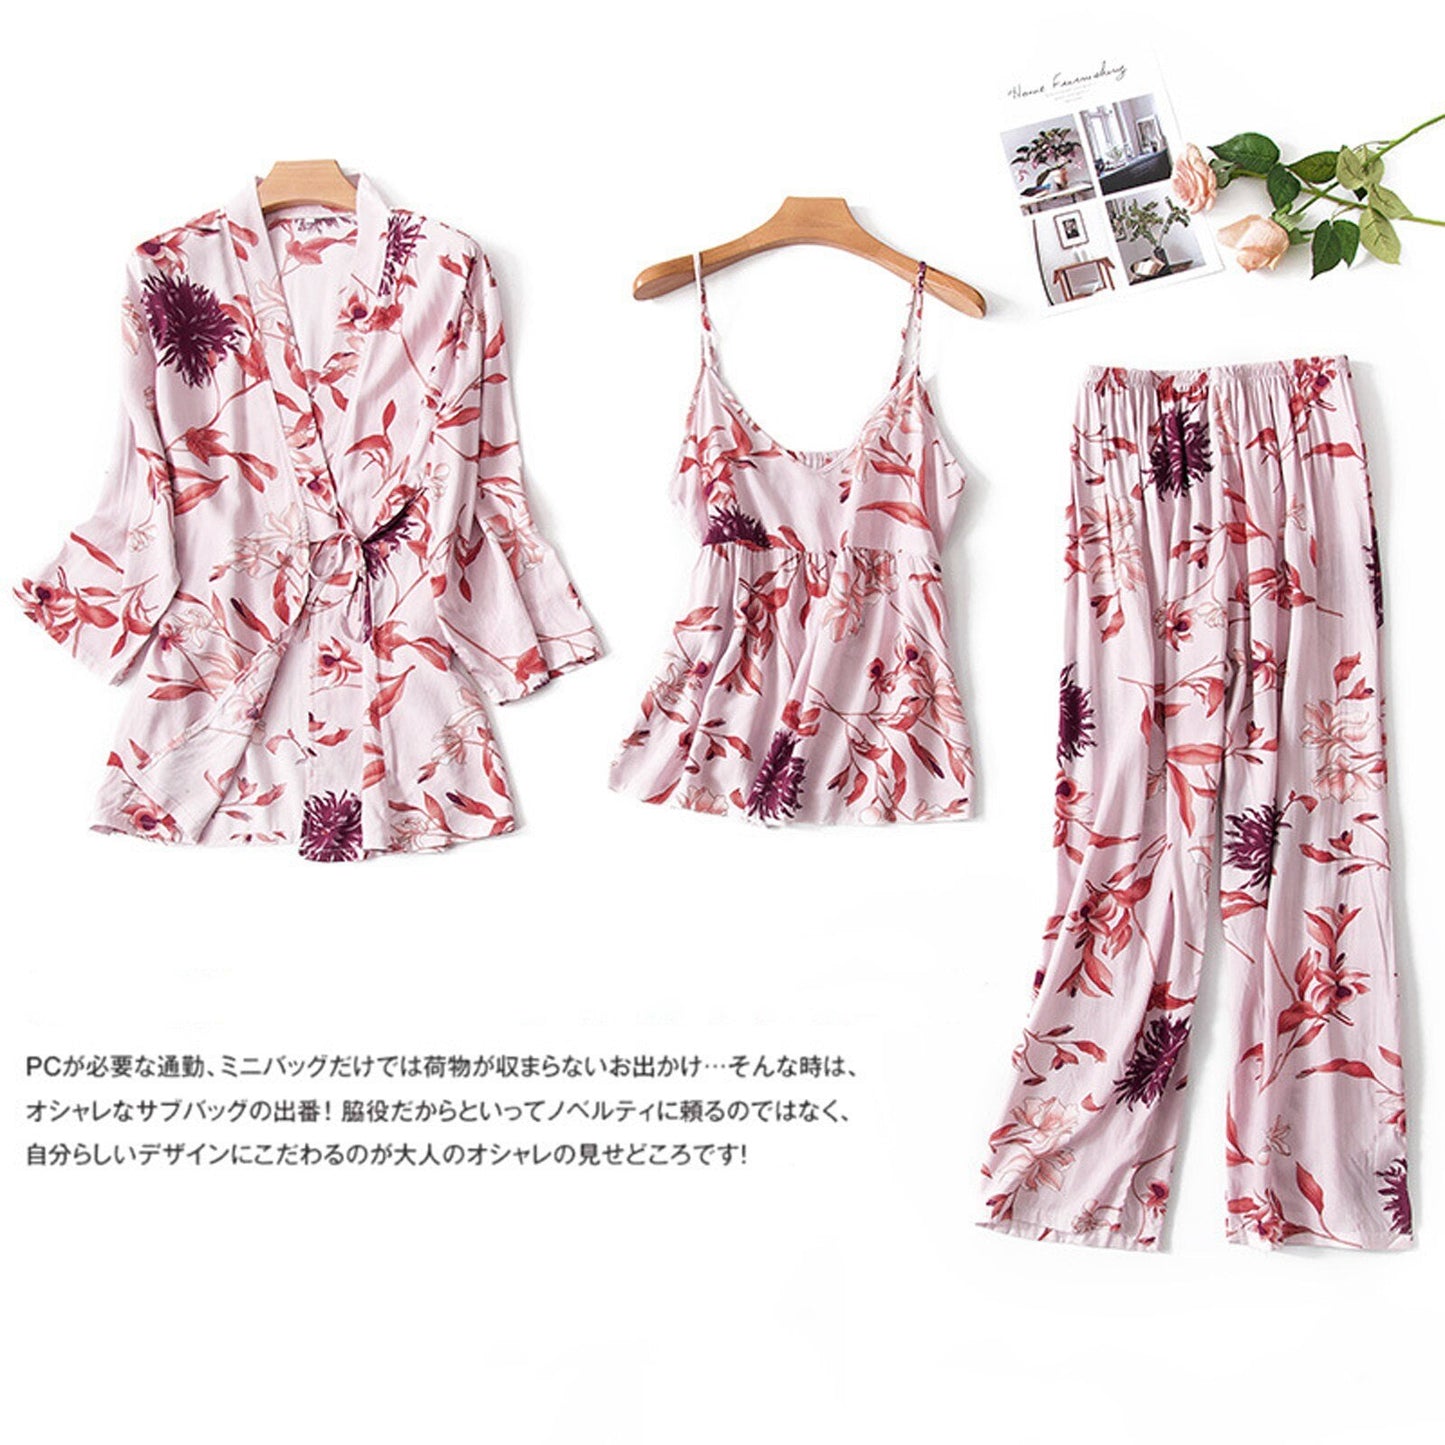 Women's Pajamas Set - 3 PCS, Silk/Satin Fabric